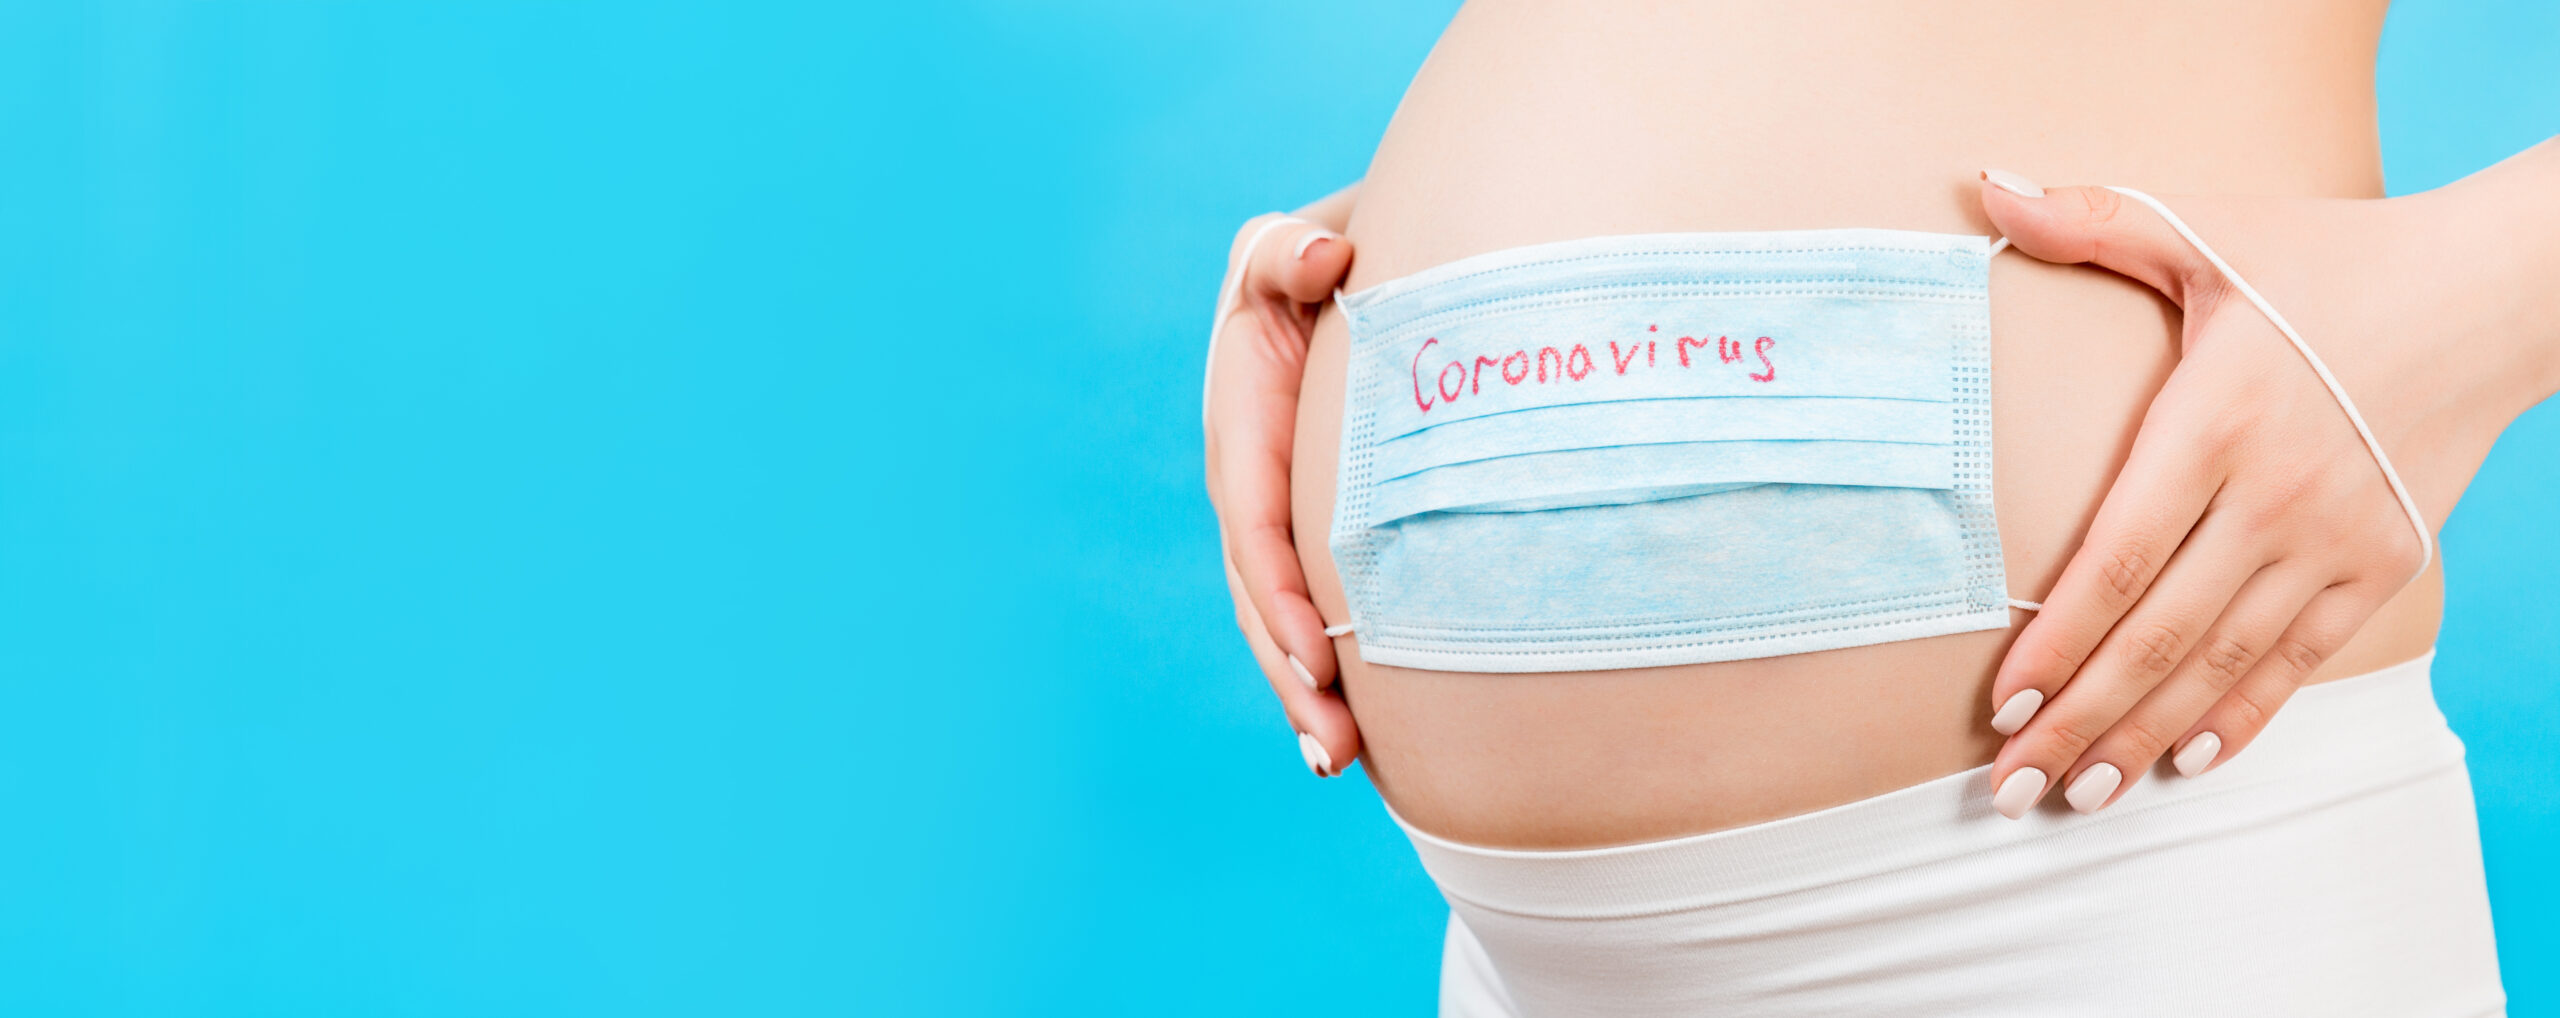 ΠΟΥ Εγκυμοσύνη: Προστασία από τους σοβαρούς κινδύνους της Covid-19 δίνουν οι νέες συστάσεις του Οργανισμού